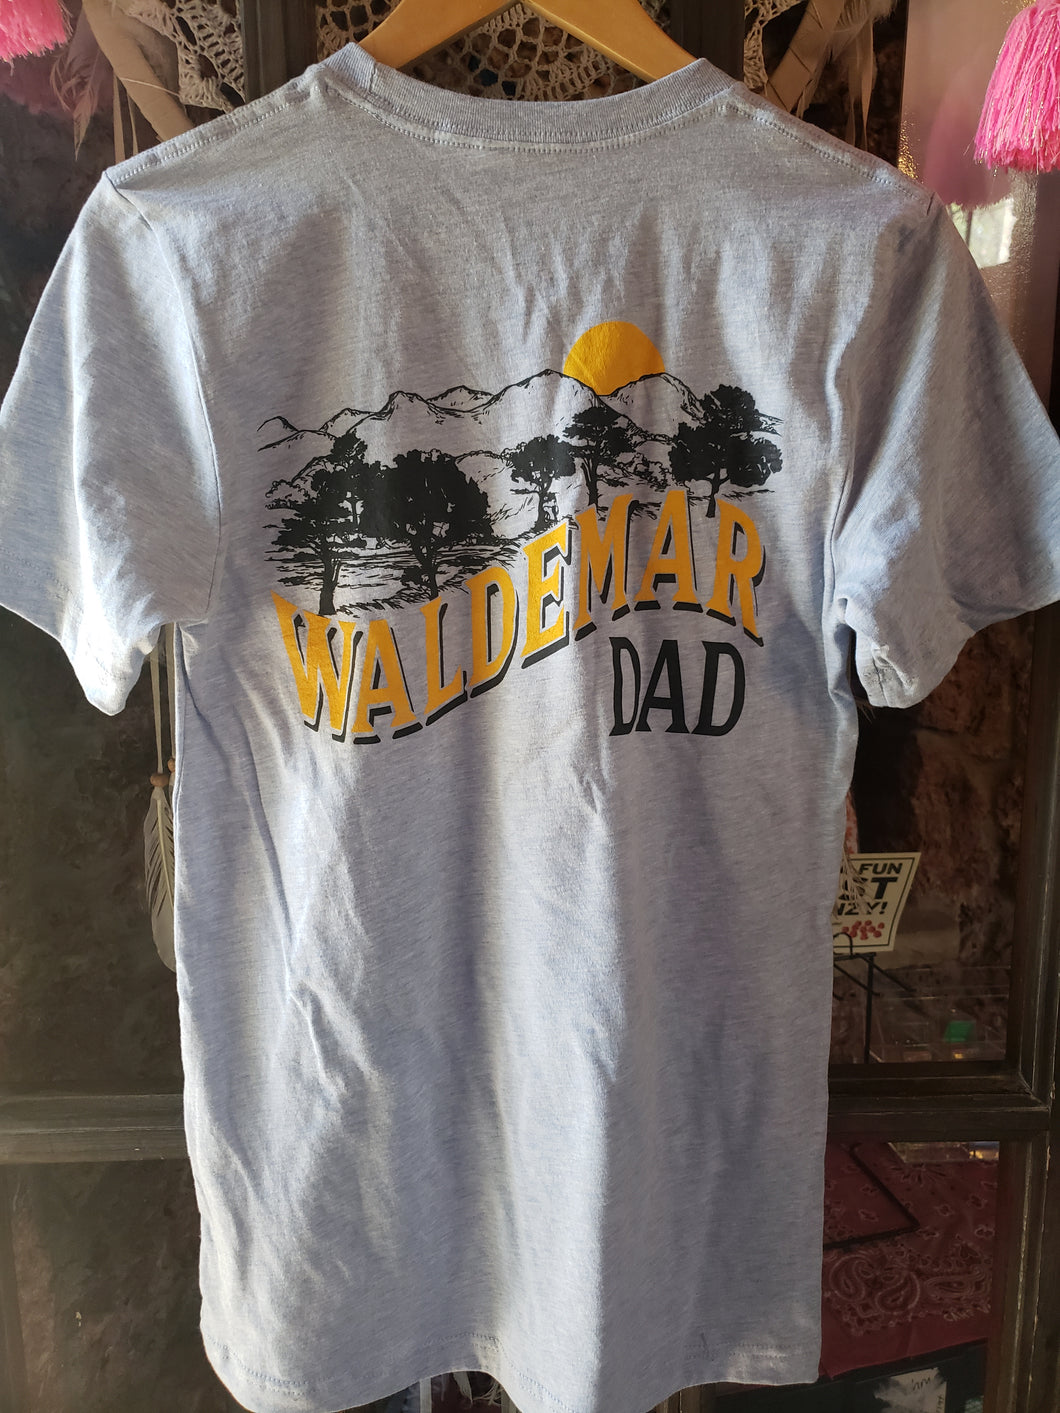 Waldemar Dad t-shirt